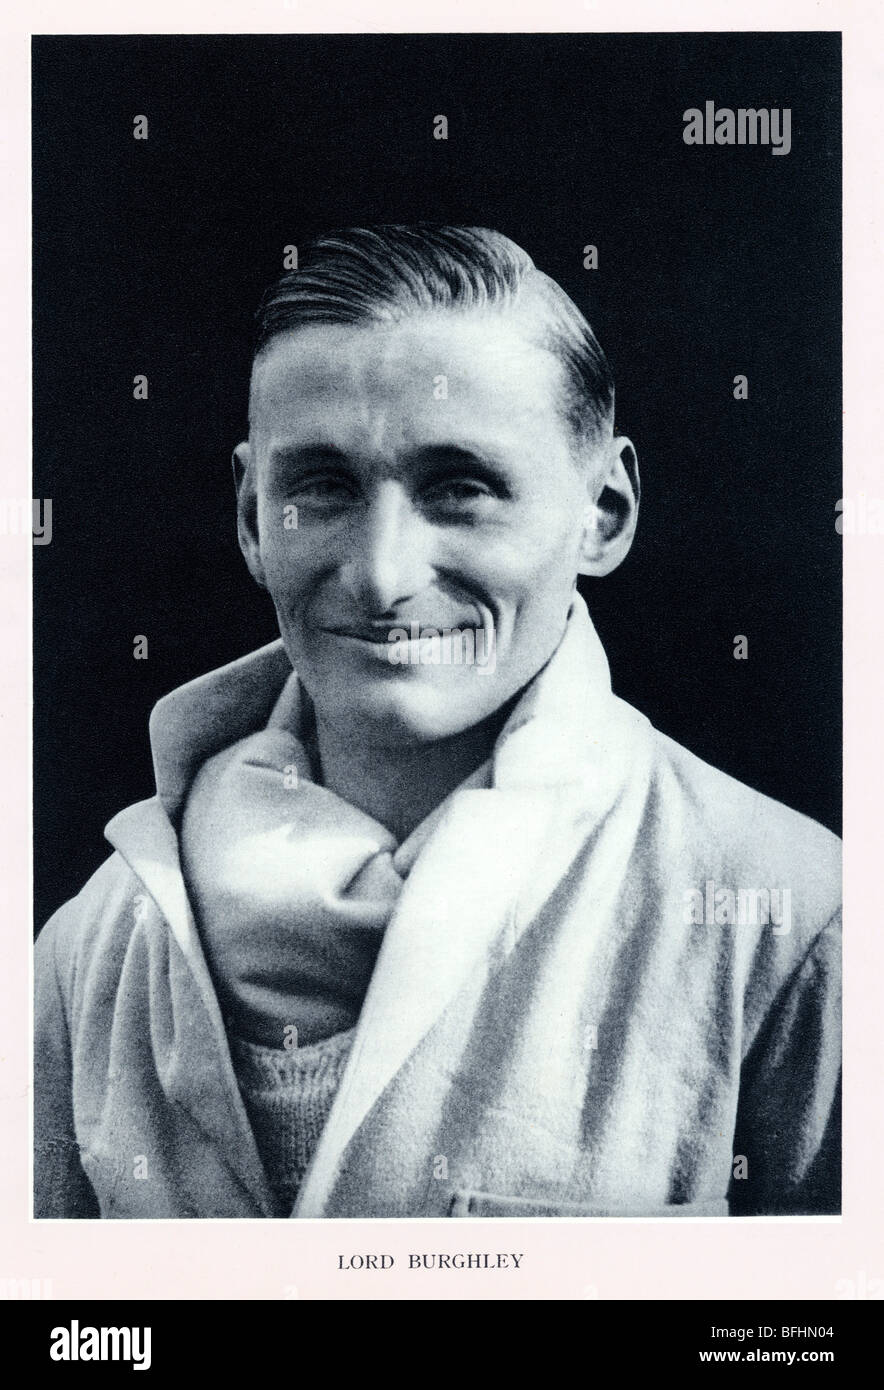 Lord Burghley, 1930 Porträt des englischen Adligen, Olympiasieger und späteren Leichtathletik-administrator Stockfoto